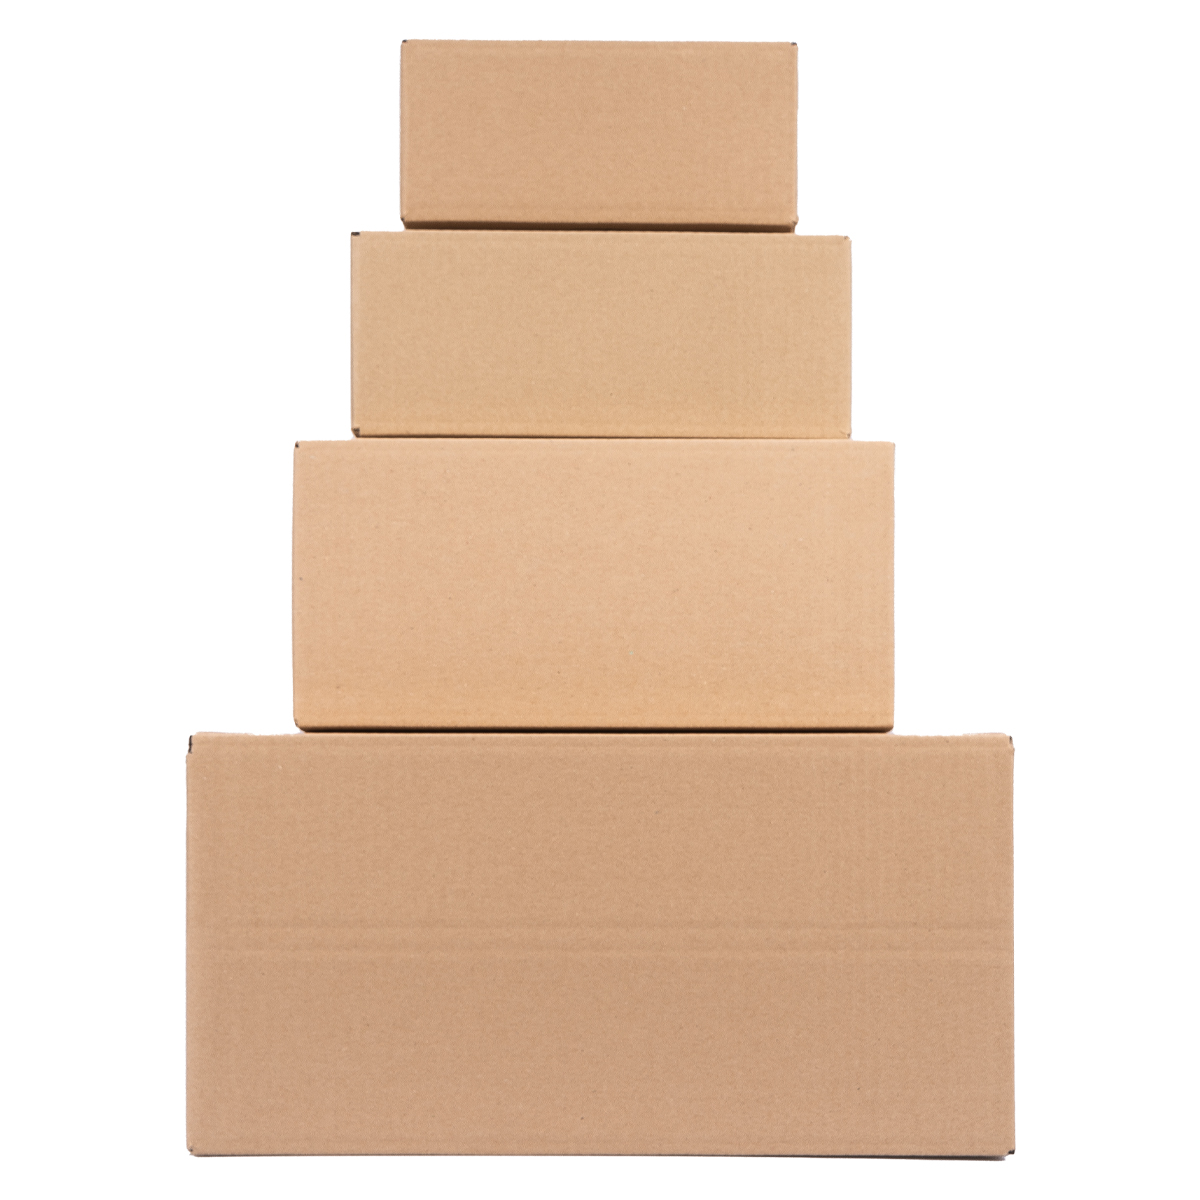 Cardboard box, single wall, 250x175x100 mm - KK 24